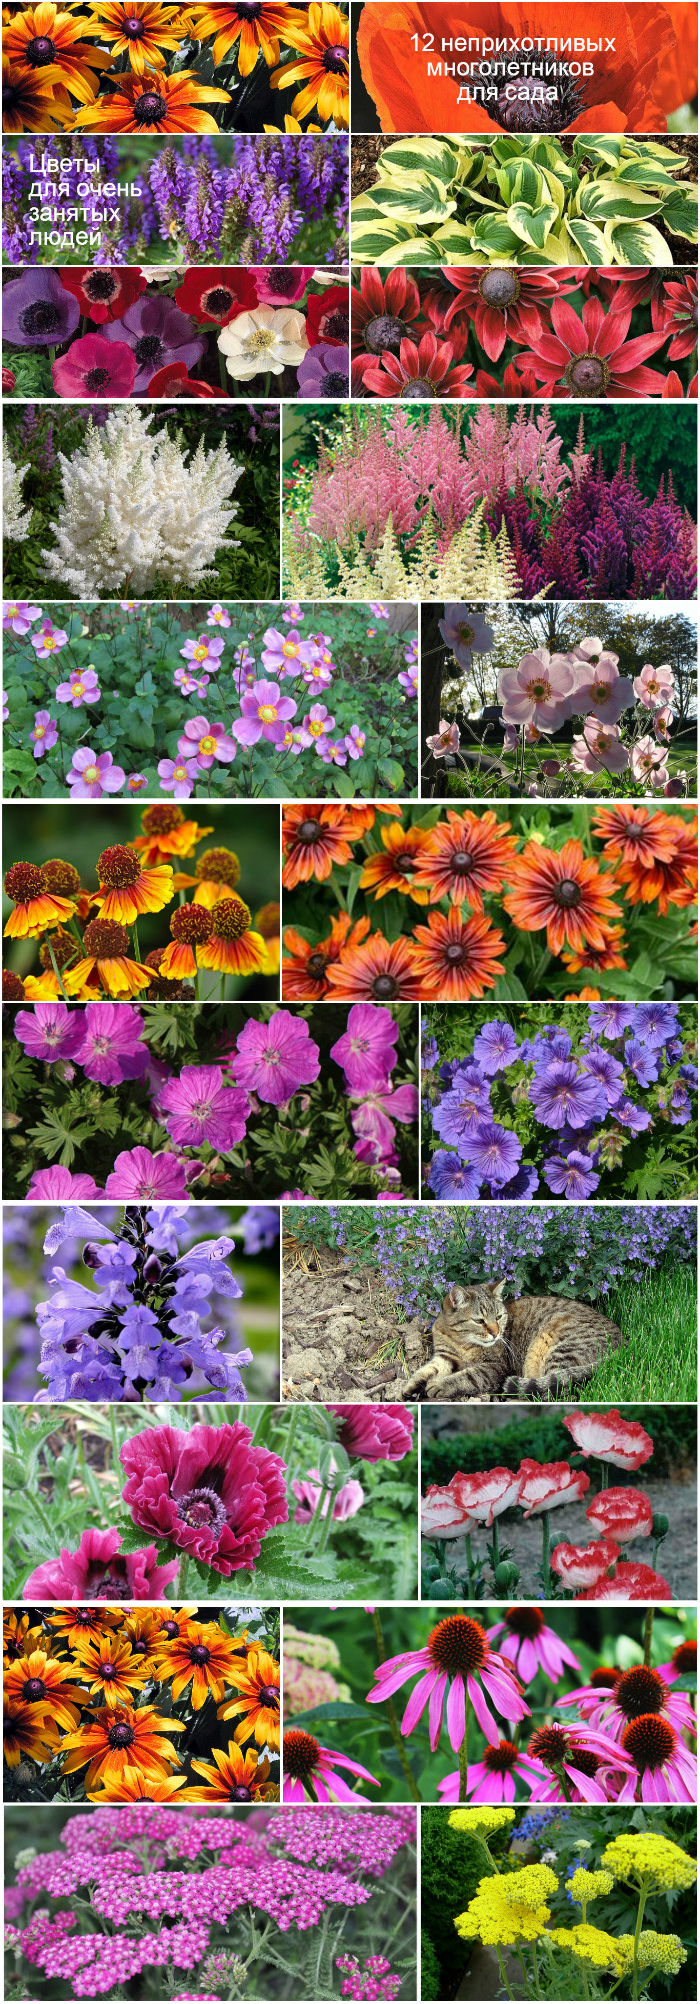 Садовые цветы: названия, фото самых популярных однолетних и многолетних цветущих растений